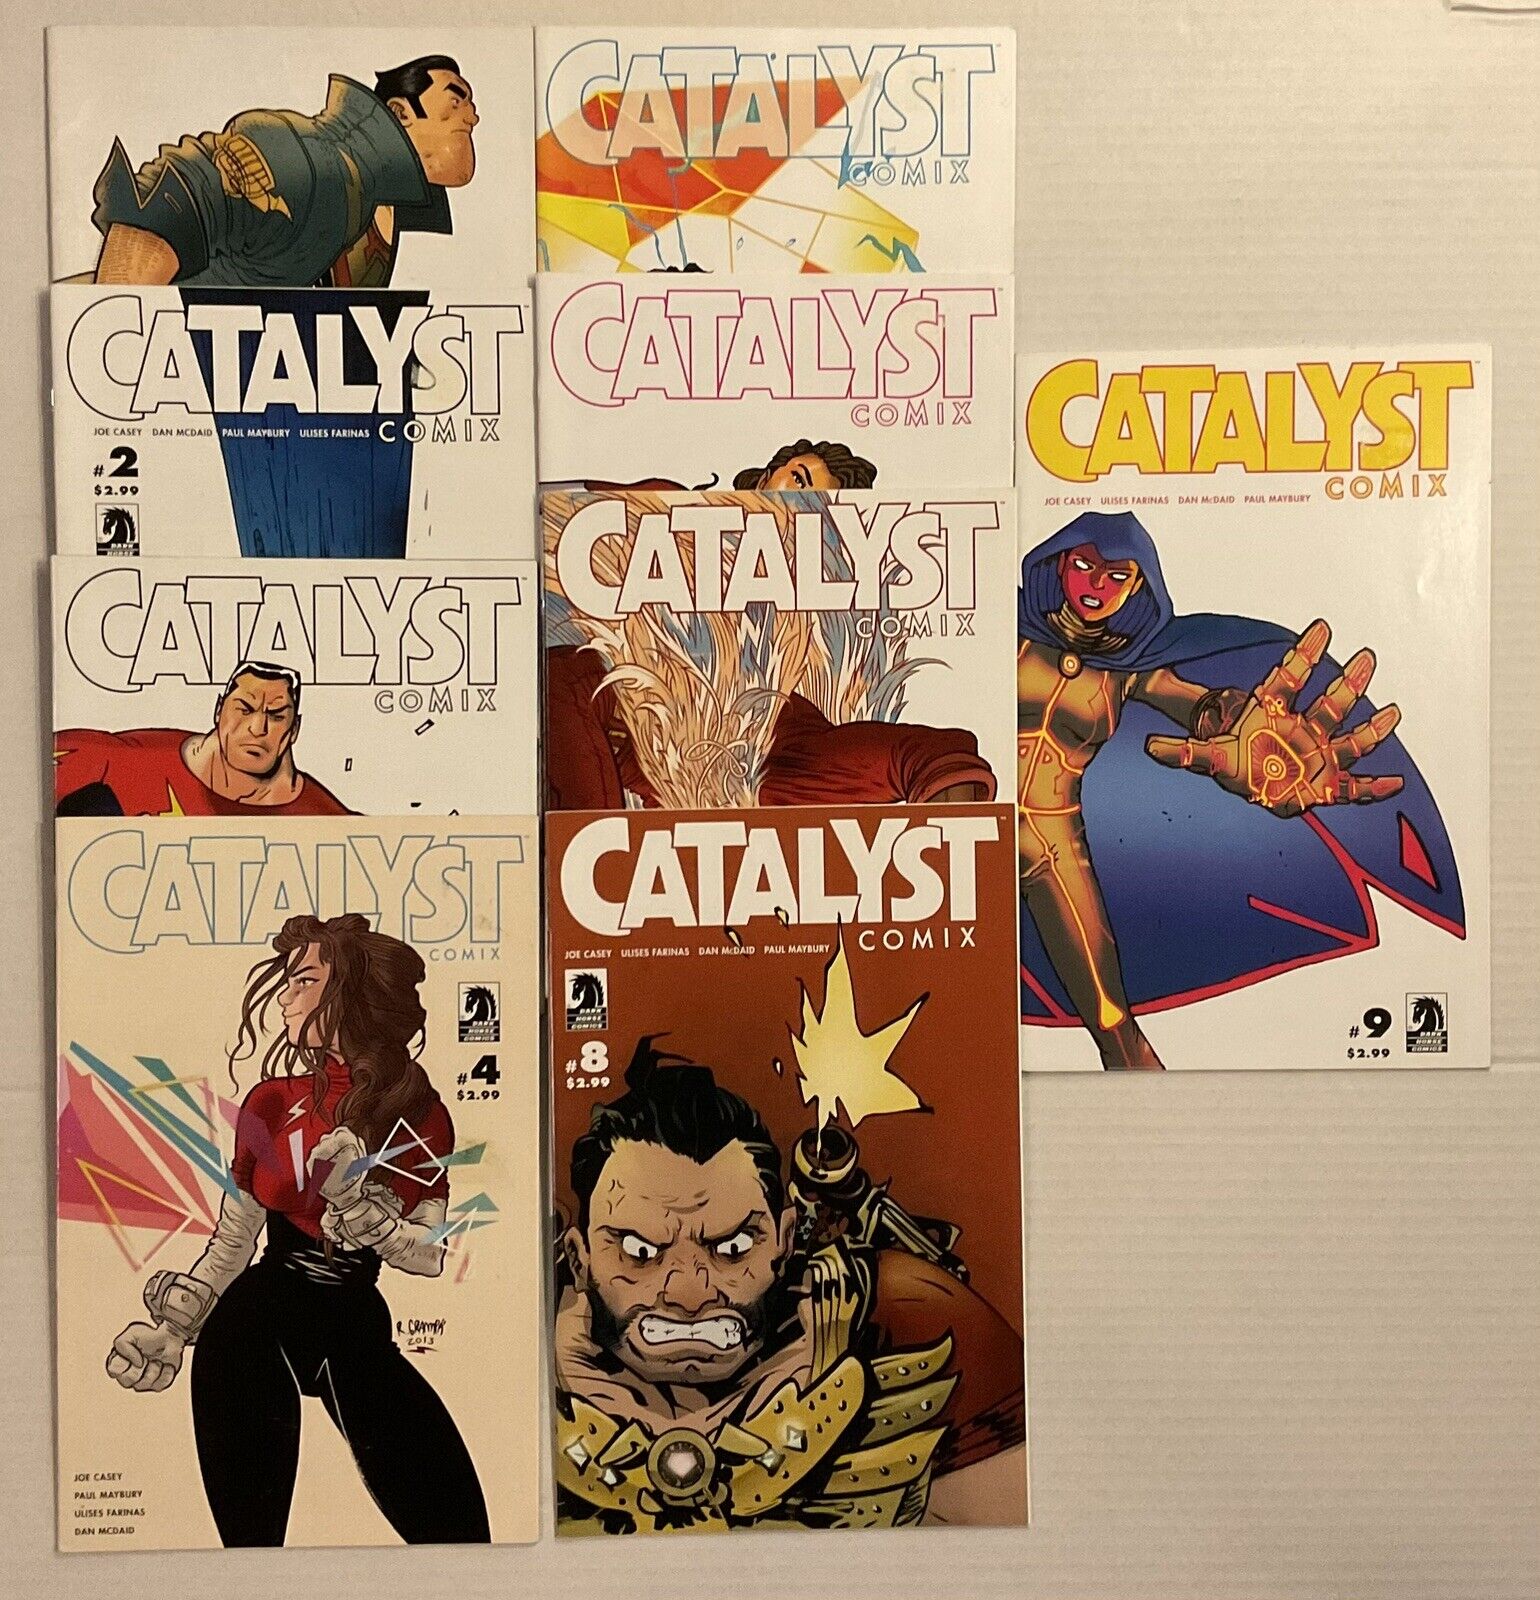 CATALYST COMIX Set 1-9, Dark Horse Comics JOE CASEY